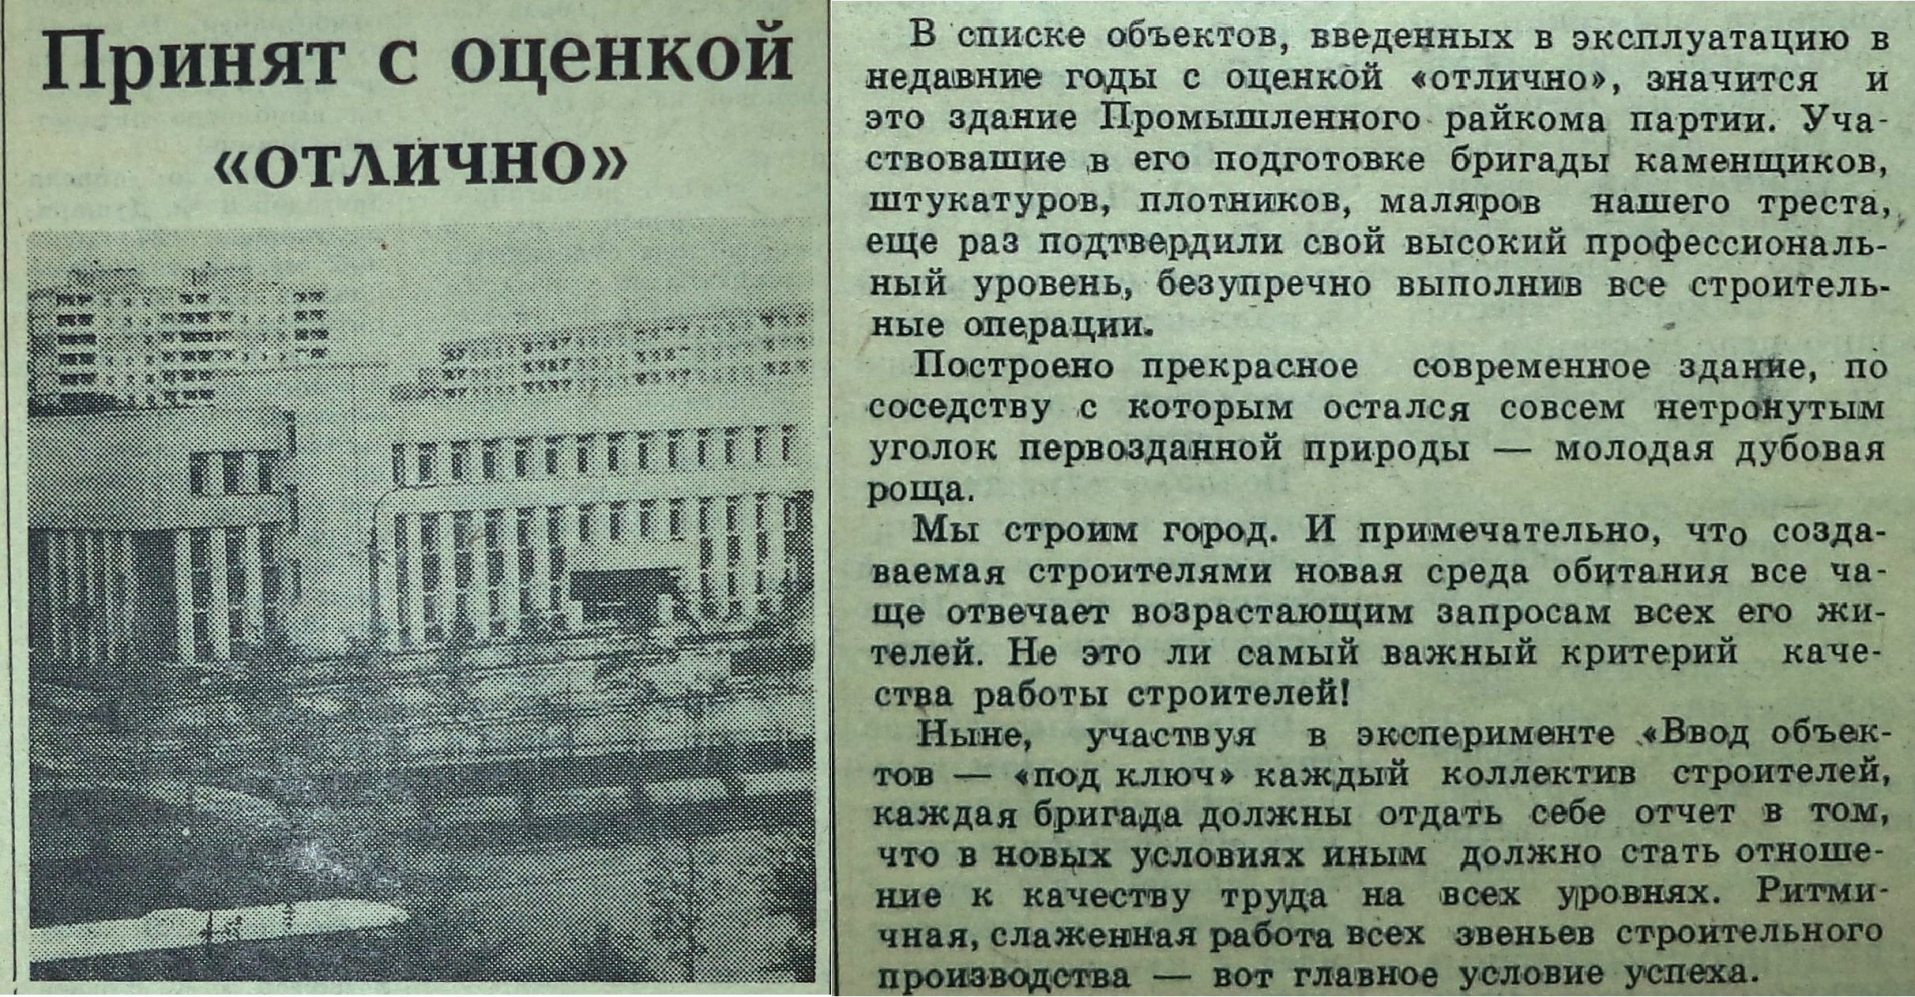 Стара Загора-ФОТО-069-Труд Строителя-1985-17 апреля-min-min